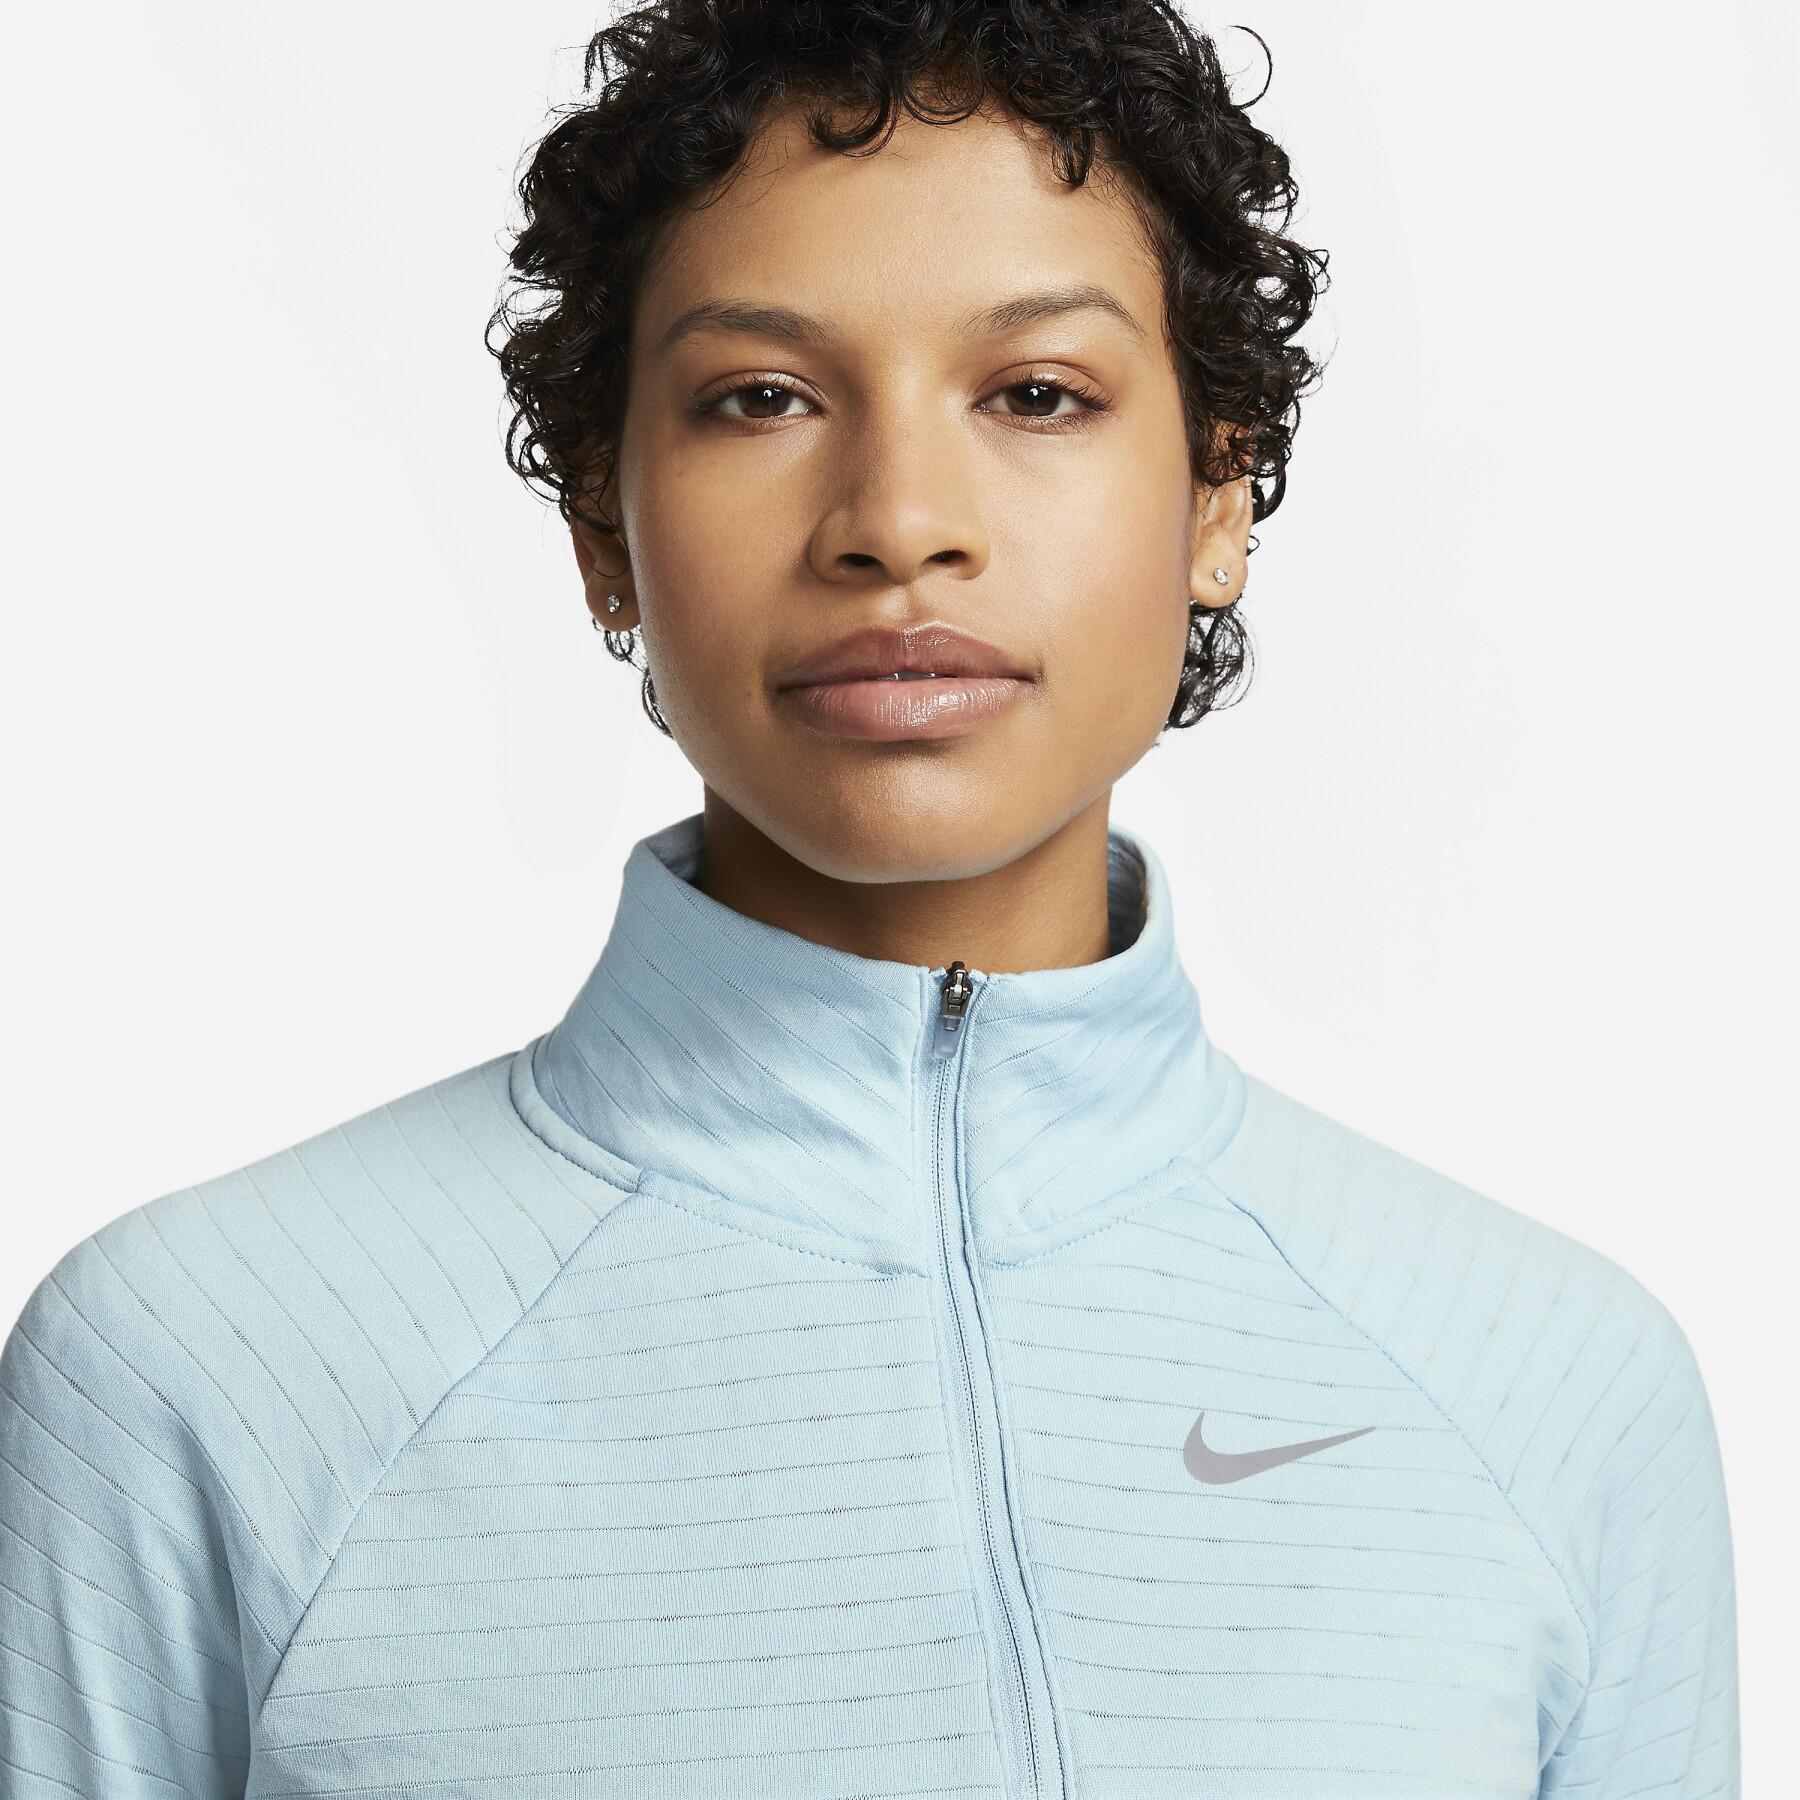 Sweatshirt 1/2 zip woman Nike Therma-Fit